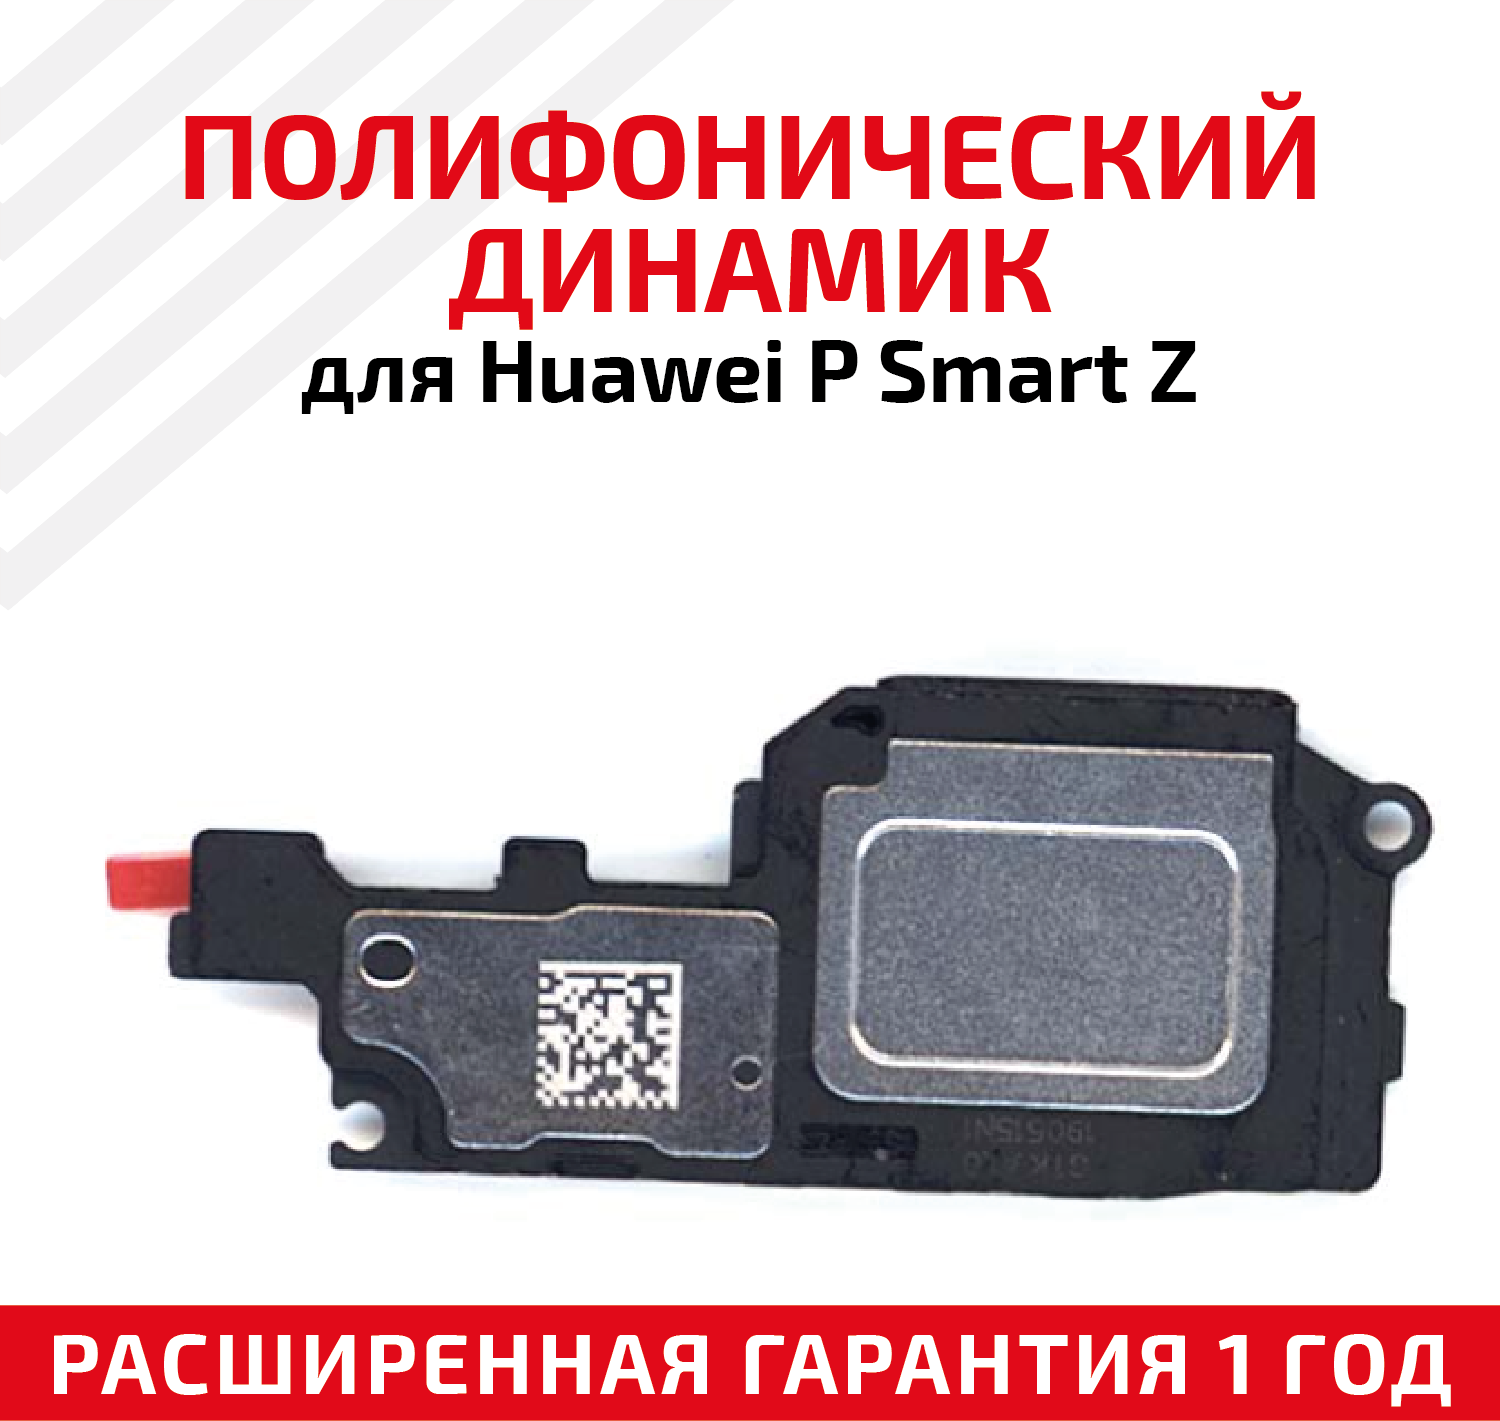 Полифонический динамик (Buzzer, бузер, звонок) для мобильного телефона (смартфона) Huawei P Smart Z